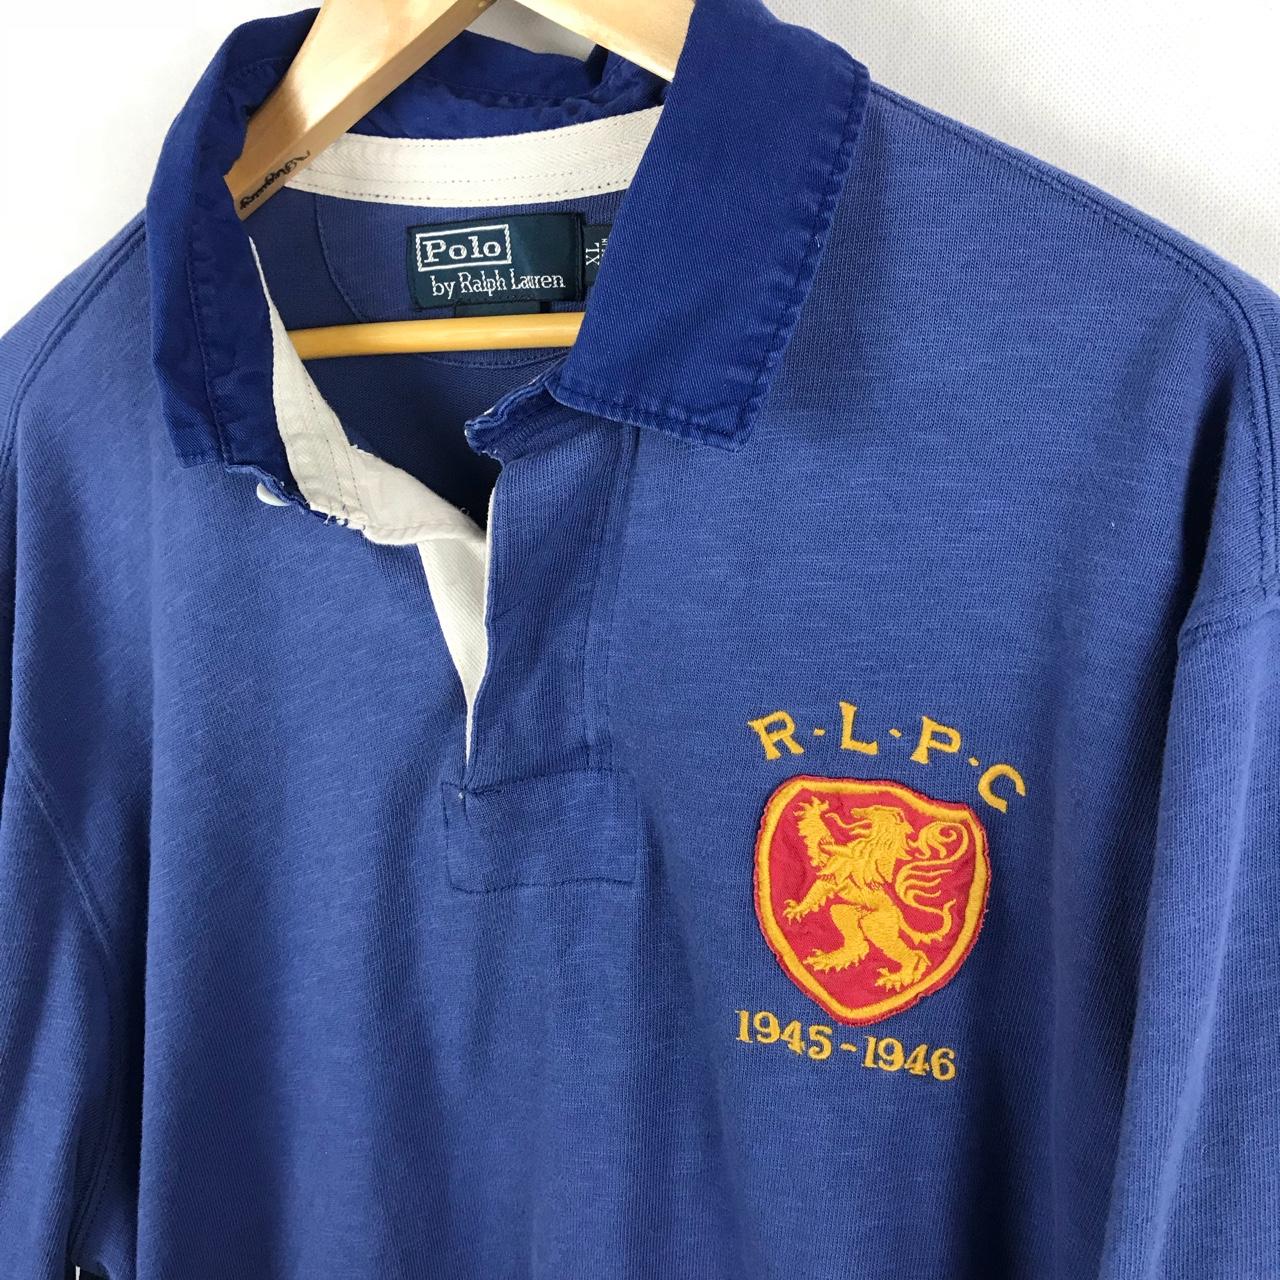 🌋Polo Ralph Lauren R.L.P.C 1945-46 Rugby shirt XL - Depop